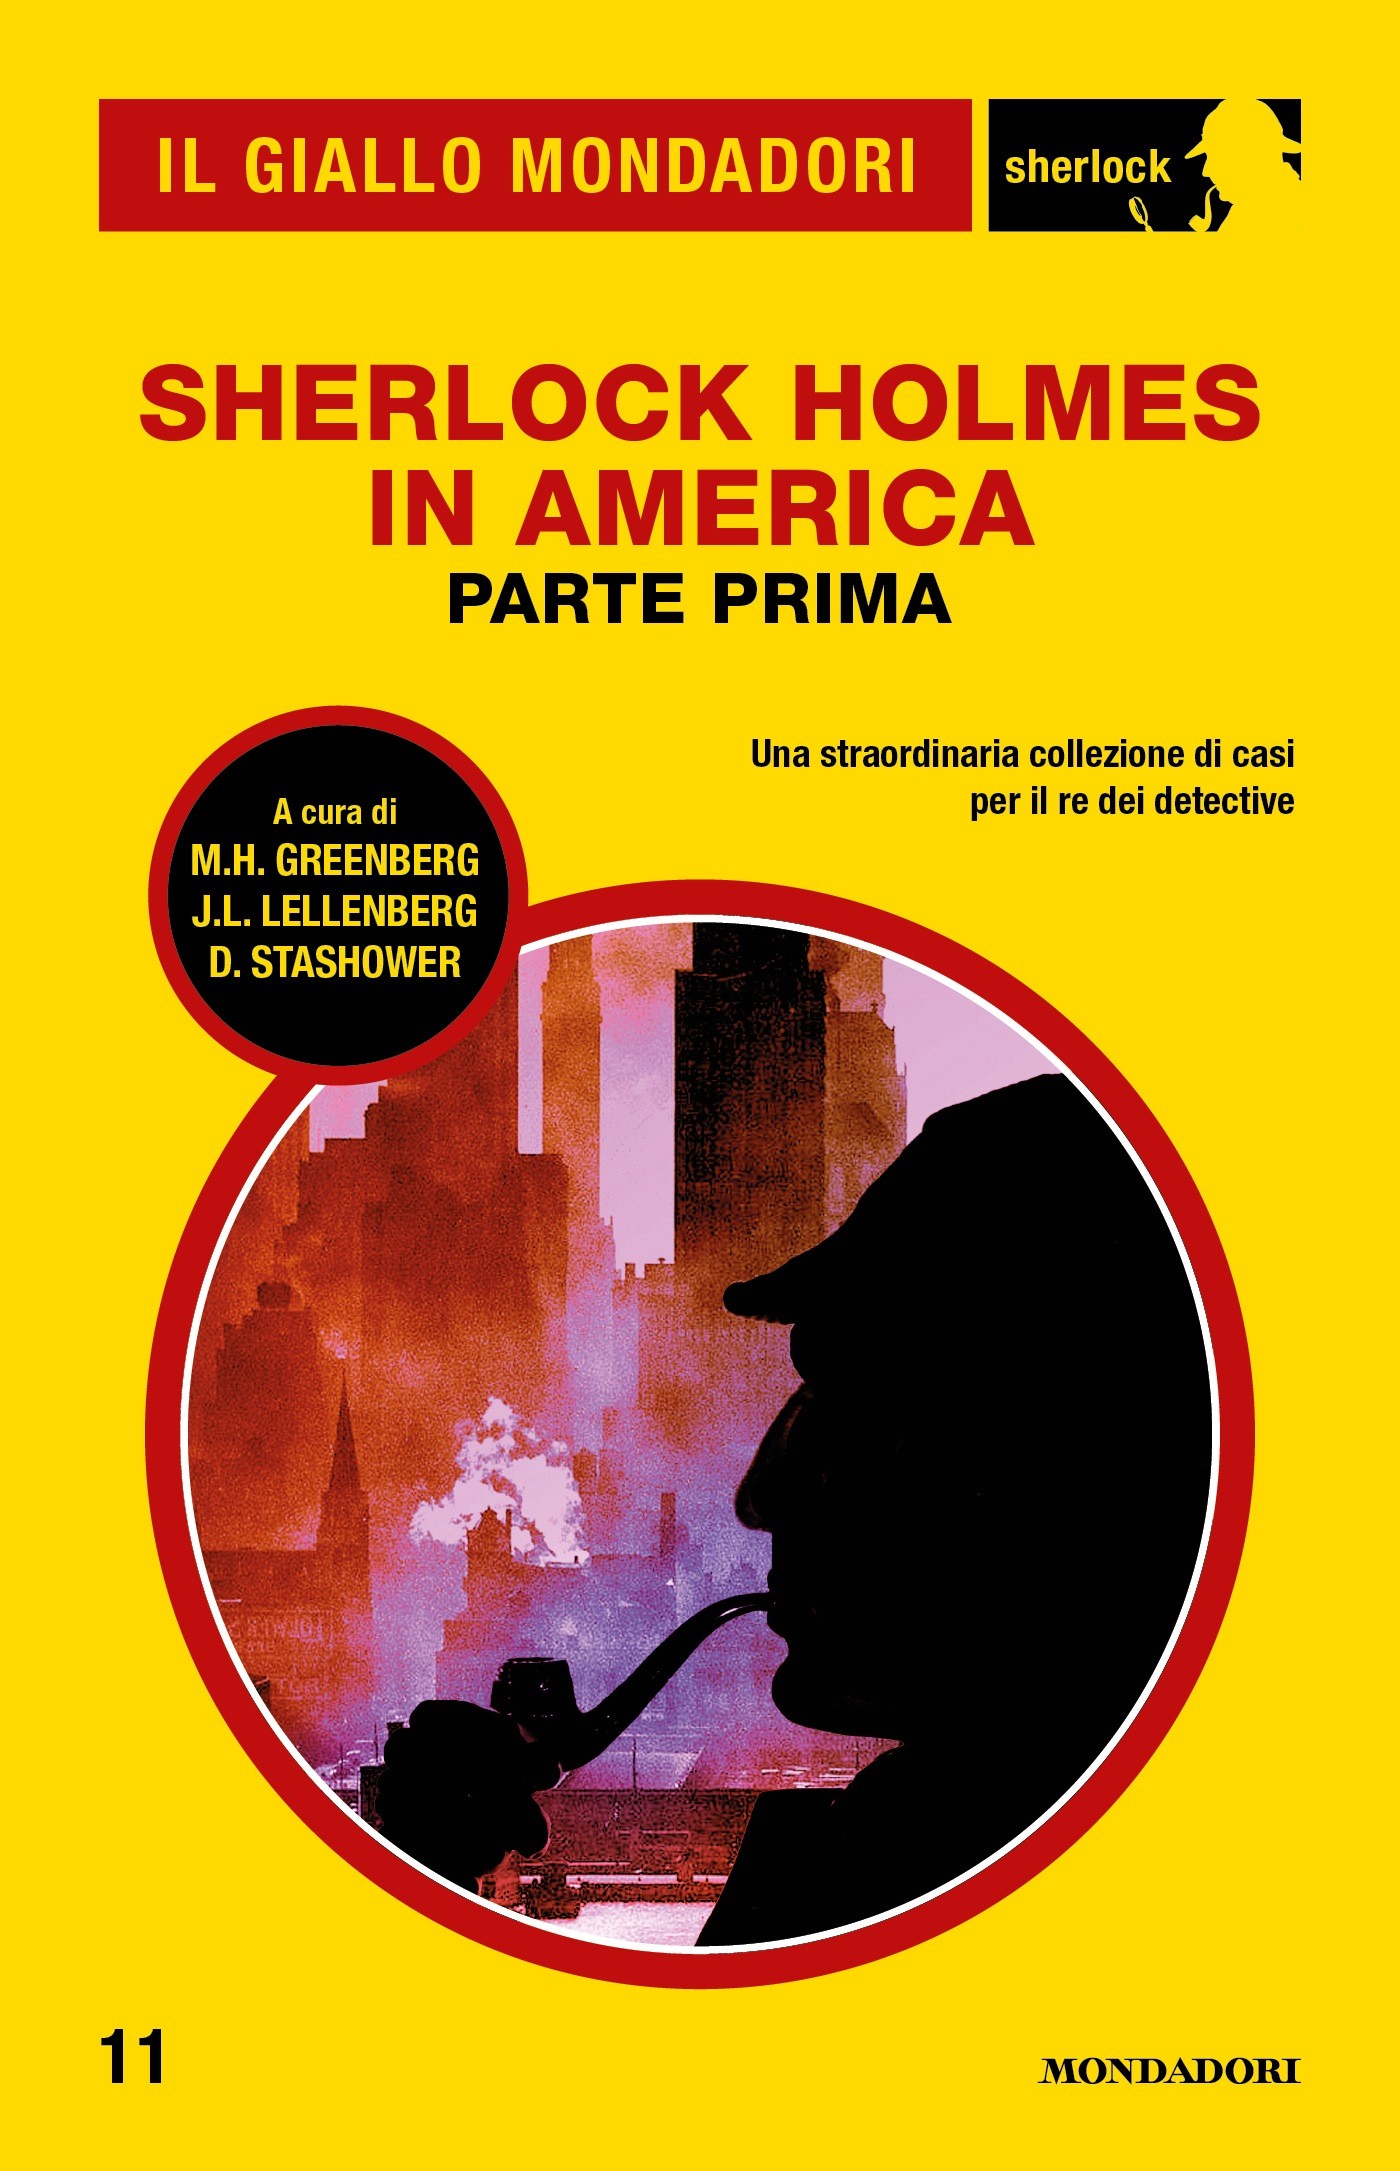 Sherlock Holmes in America - parte prima (Il Giallo Mondadori Sherlock) - Librerie.coop